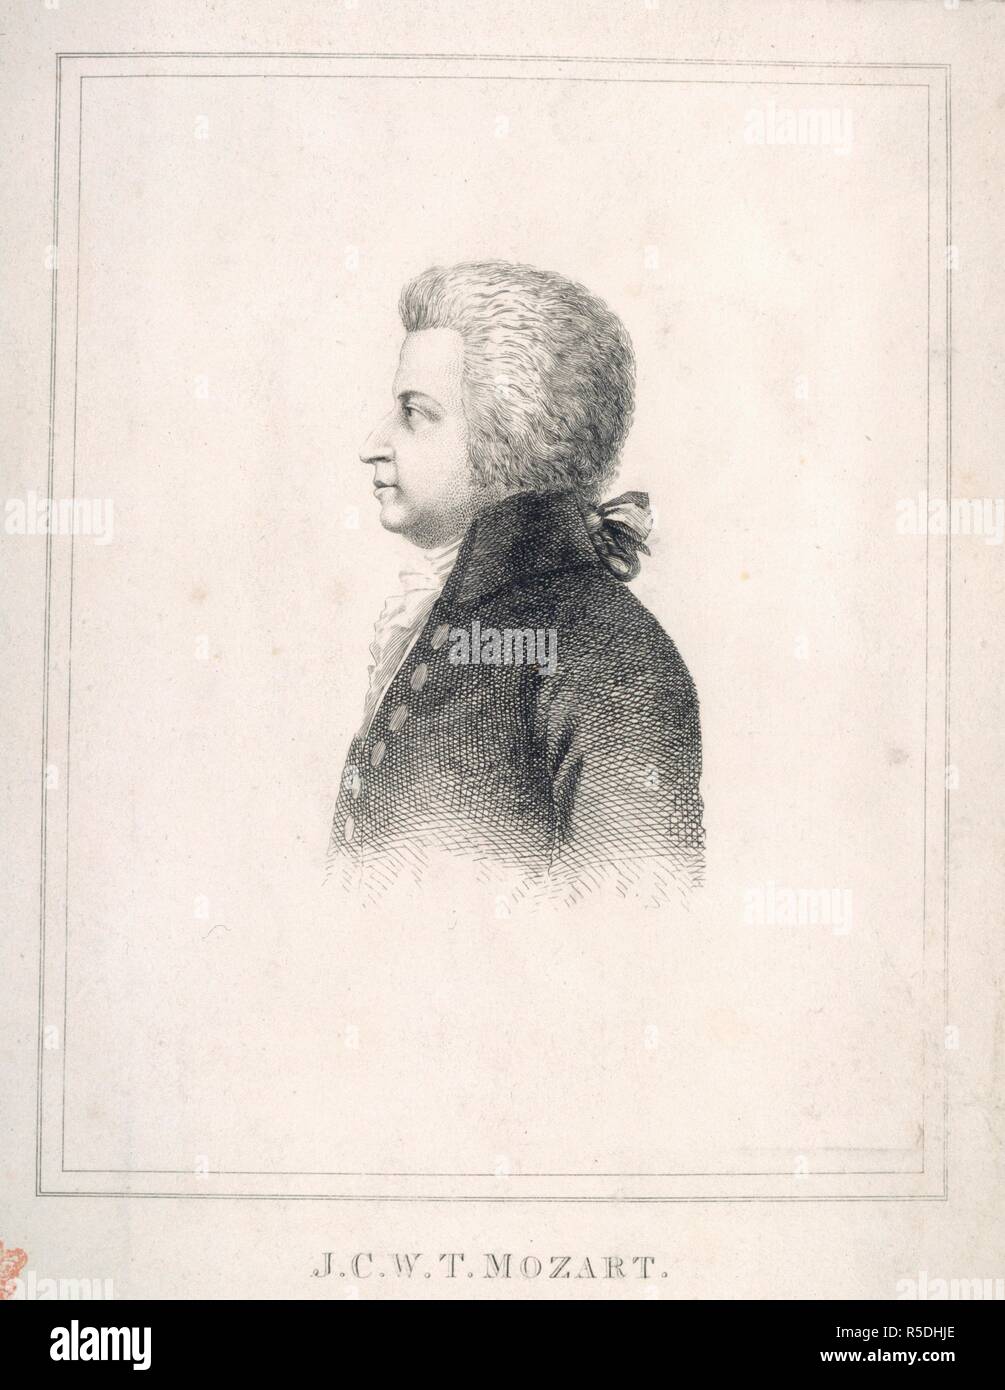 J.C.W.T. Mozart. Collections par Eliza Wesley relatives à l'anglais. Xixème 100. Wolfgang Amadeus Mozart (1756-91). Compositeur autrichien. Portrait. Image prise à partir de collections par Eliza Wesley relatives à l'anglais et des compositeurs, musiciens, chanteurs et autres, composé de portraits gravés, des photographies, des coupes à blanc, et autres imprimés, avec quelques lettres, etc. Les noms sont tous donnés dans l'index. Publié à l'origine/produits au xixème 100. . Source : ajouter. 35027, f.44. Banque D'Images